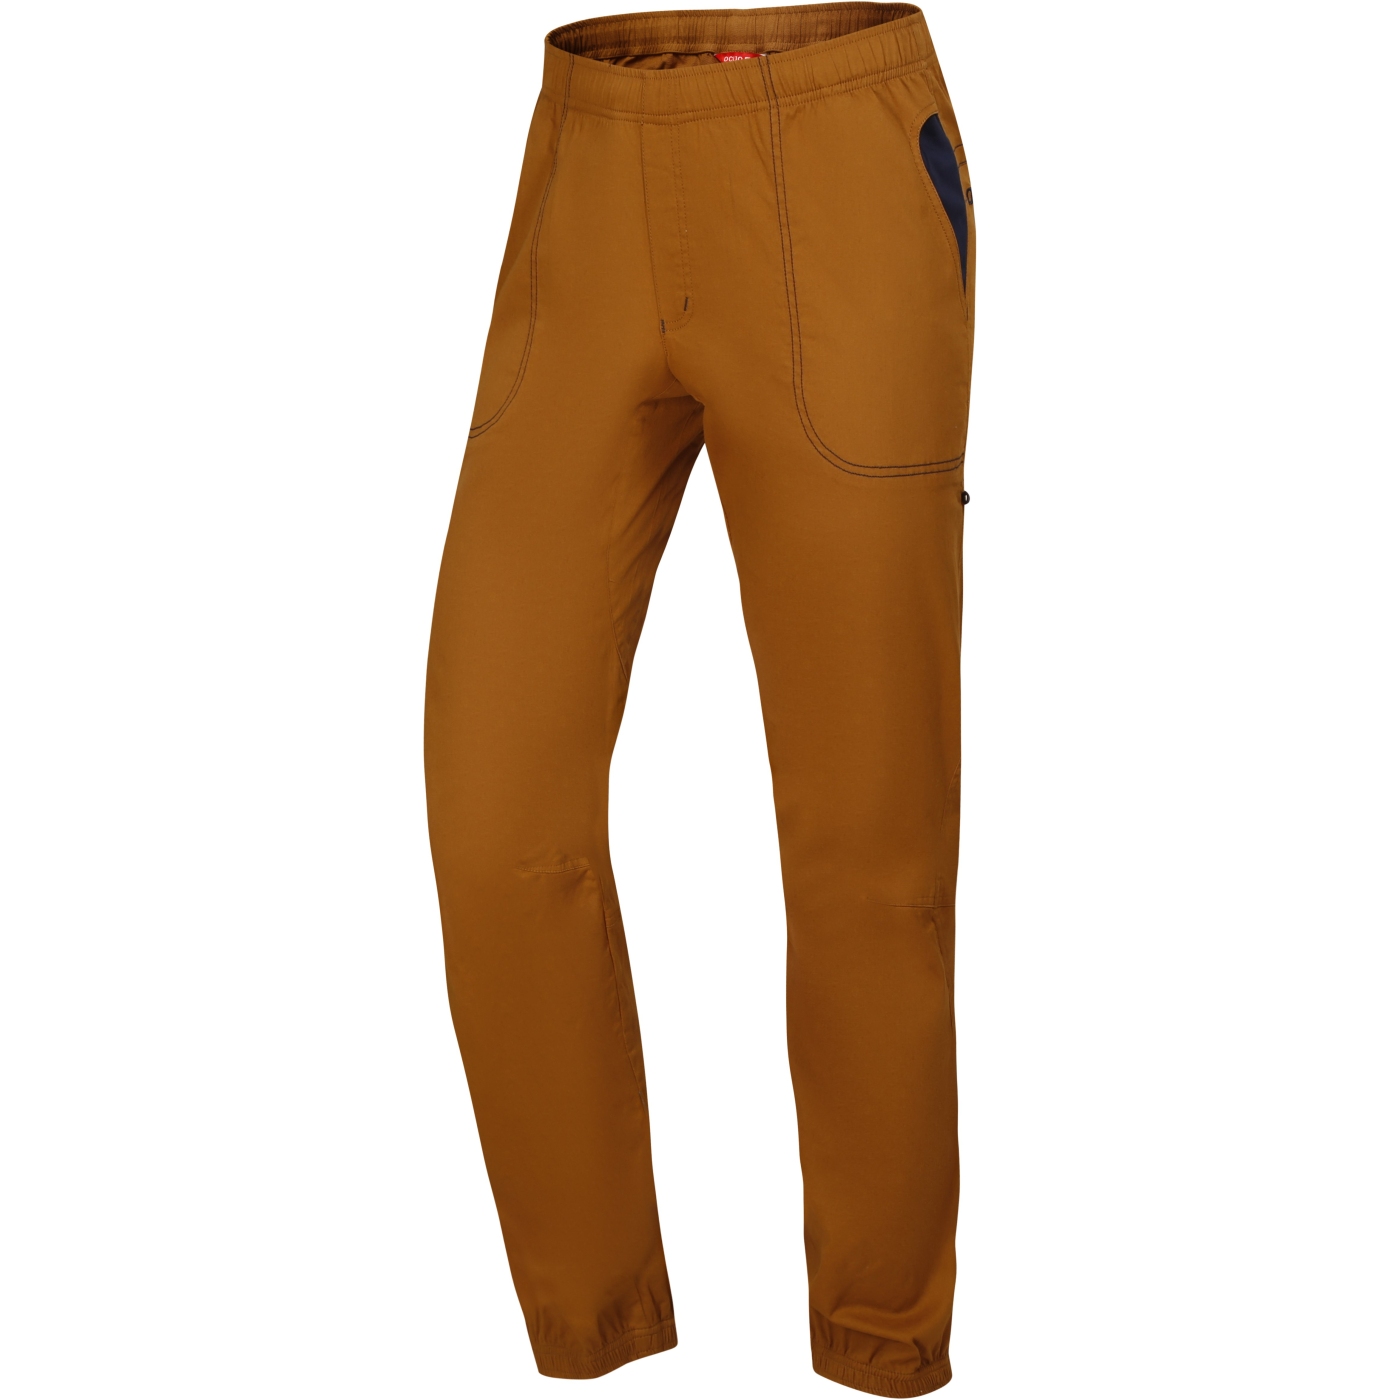 Produktbild von Ocún Jaws Pants Kletterhose Herren - brown bronze